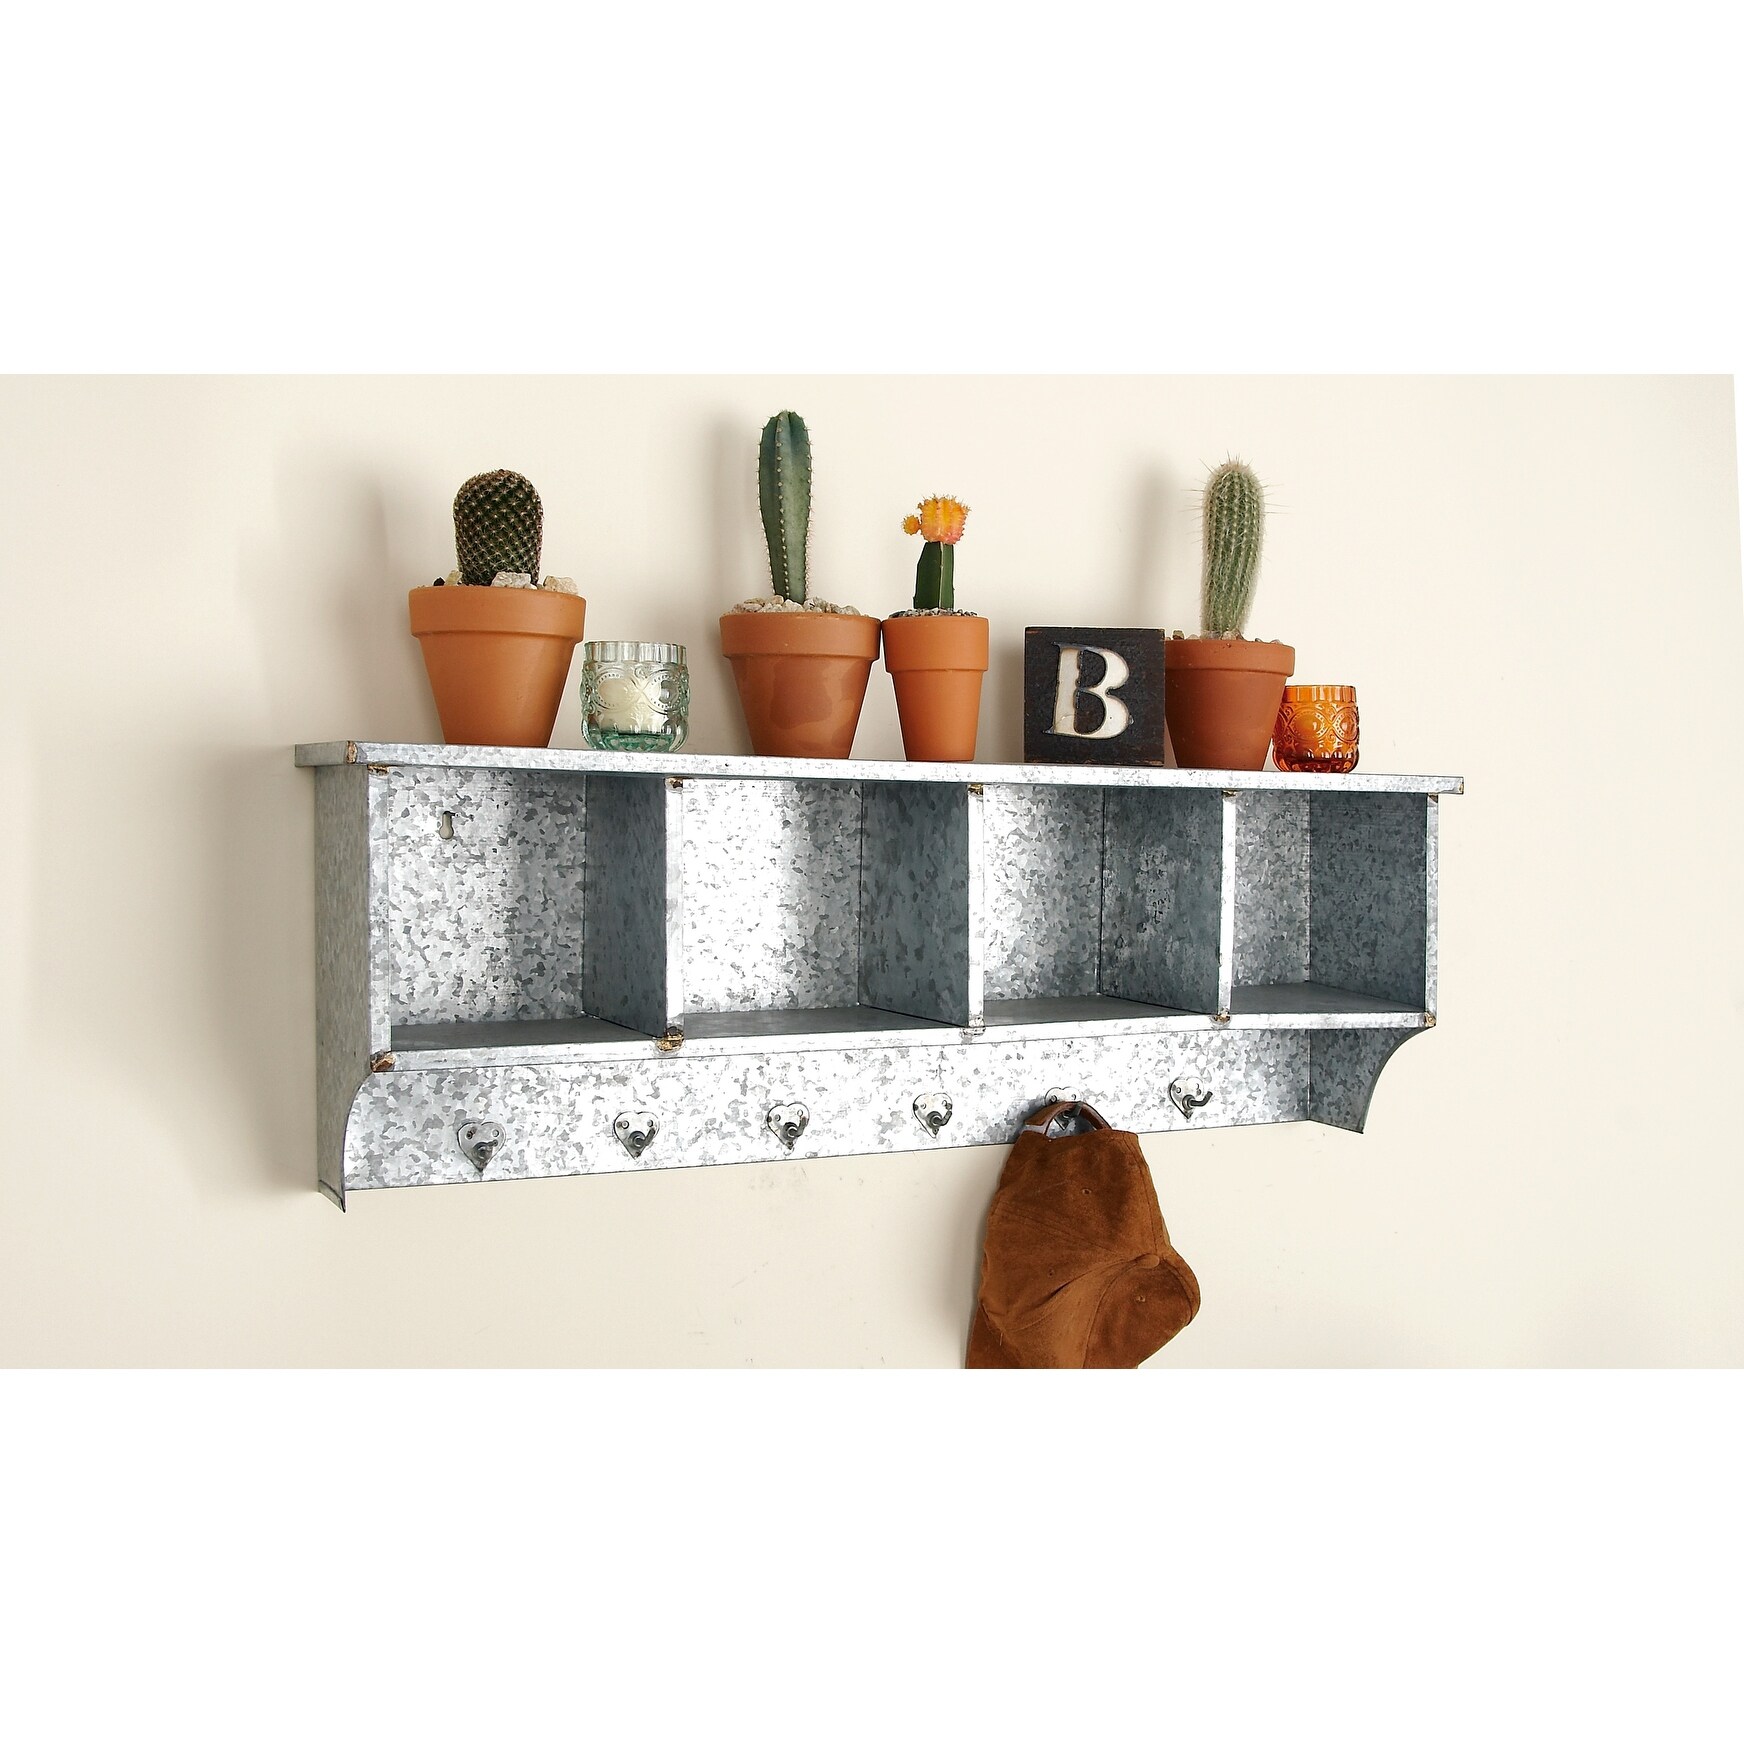 Pottery Barn Farmhouse Style $15 DIY Cubby Wall Shelf - A Piece Of